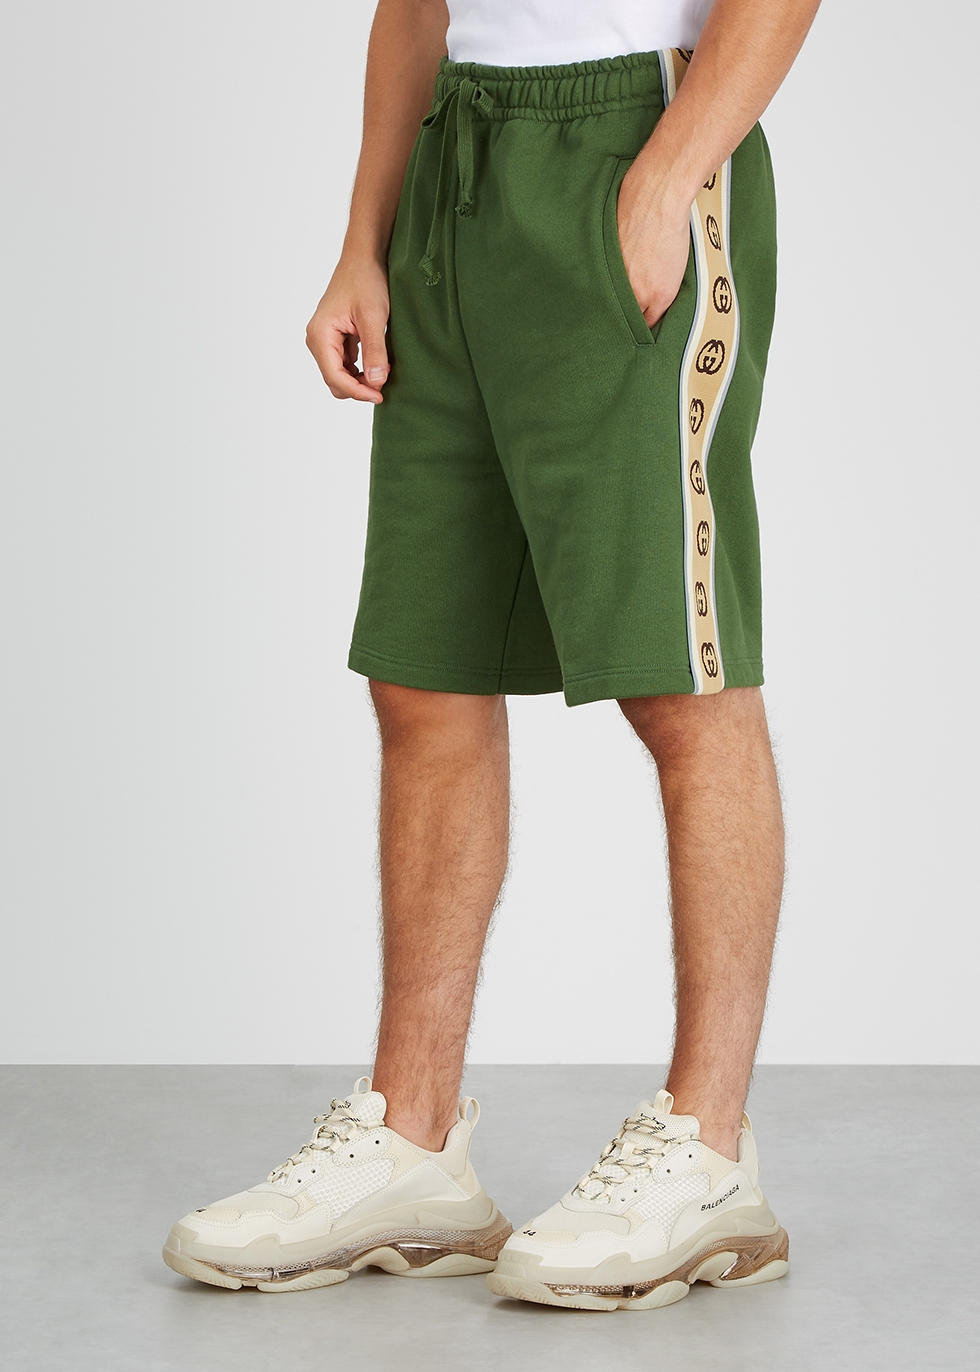 gucci shorts green